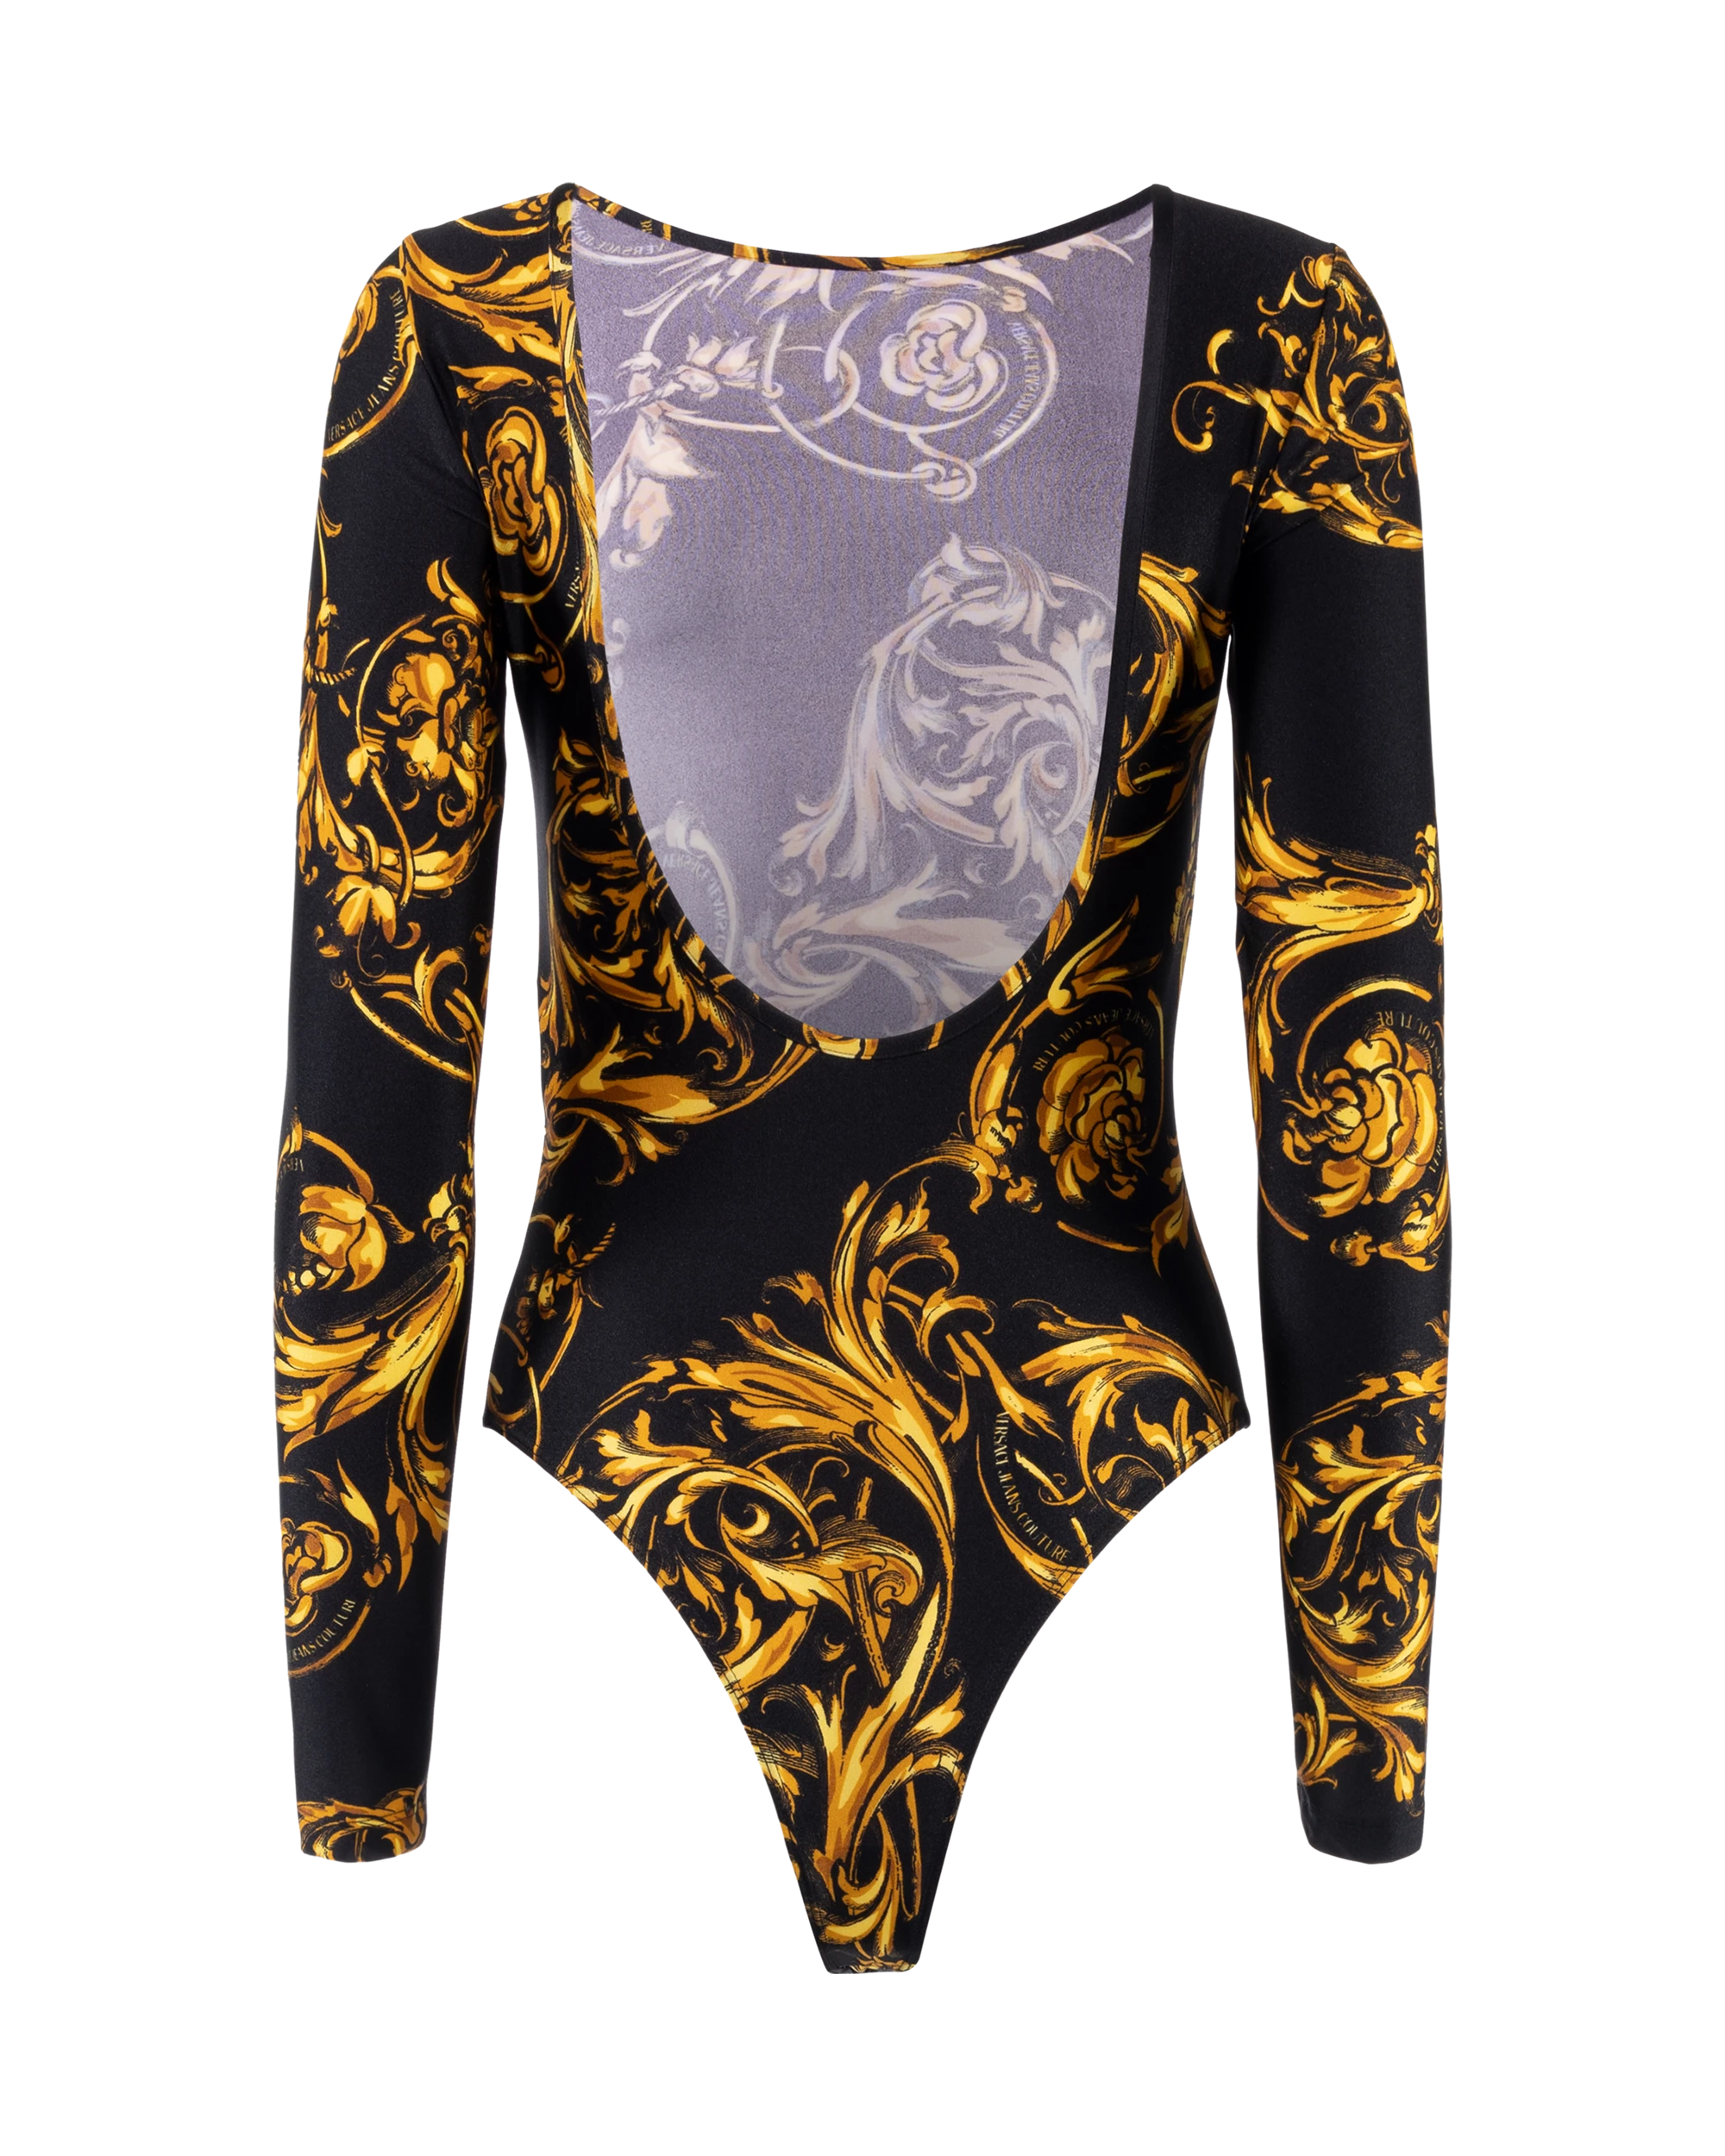 Regalia Baroque Printed Bodysuit